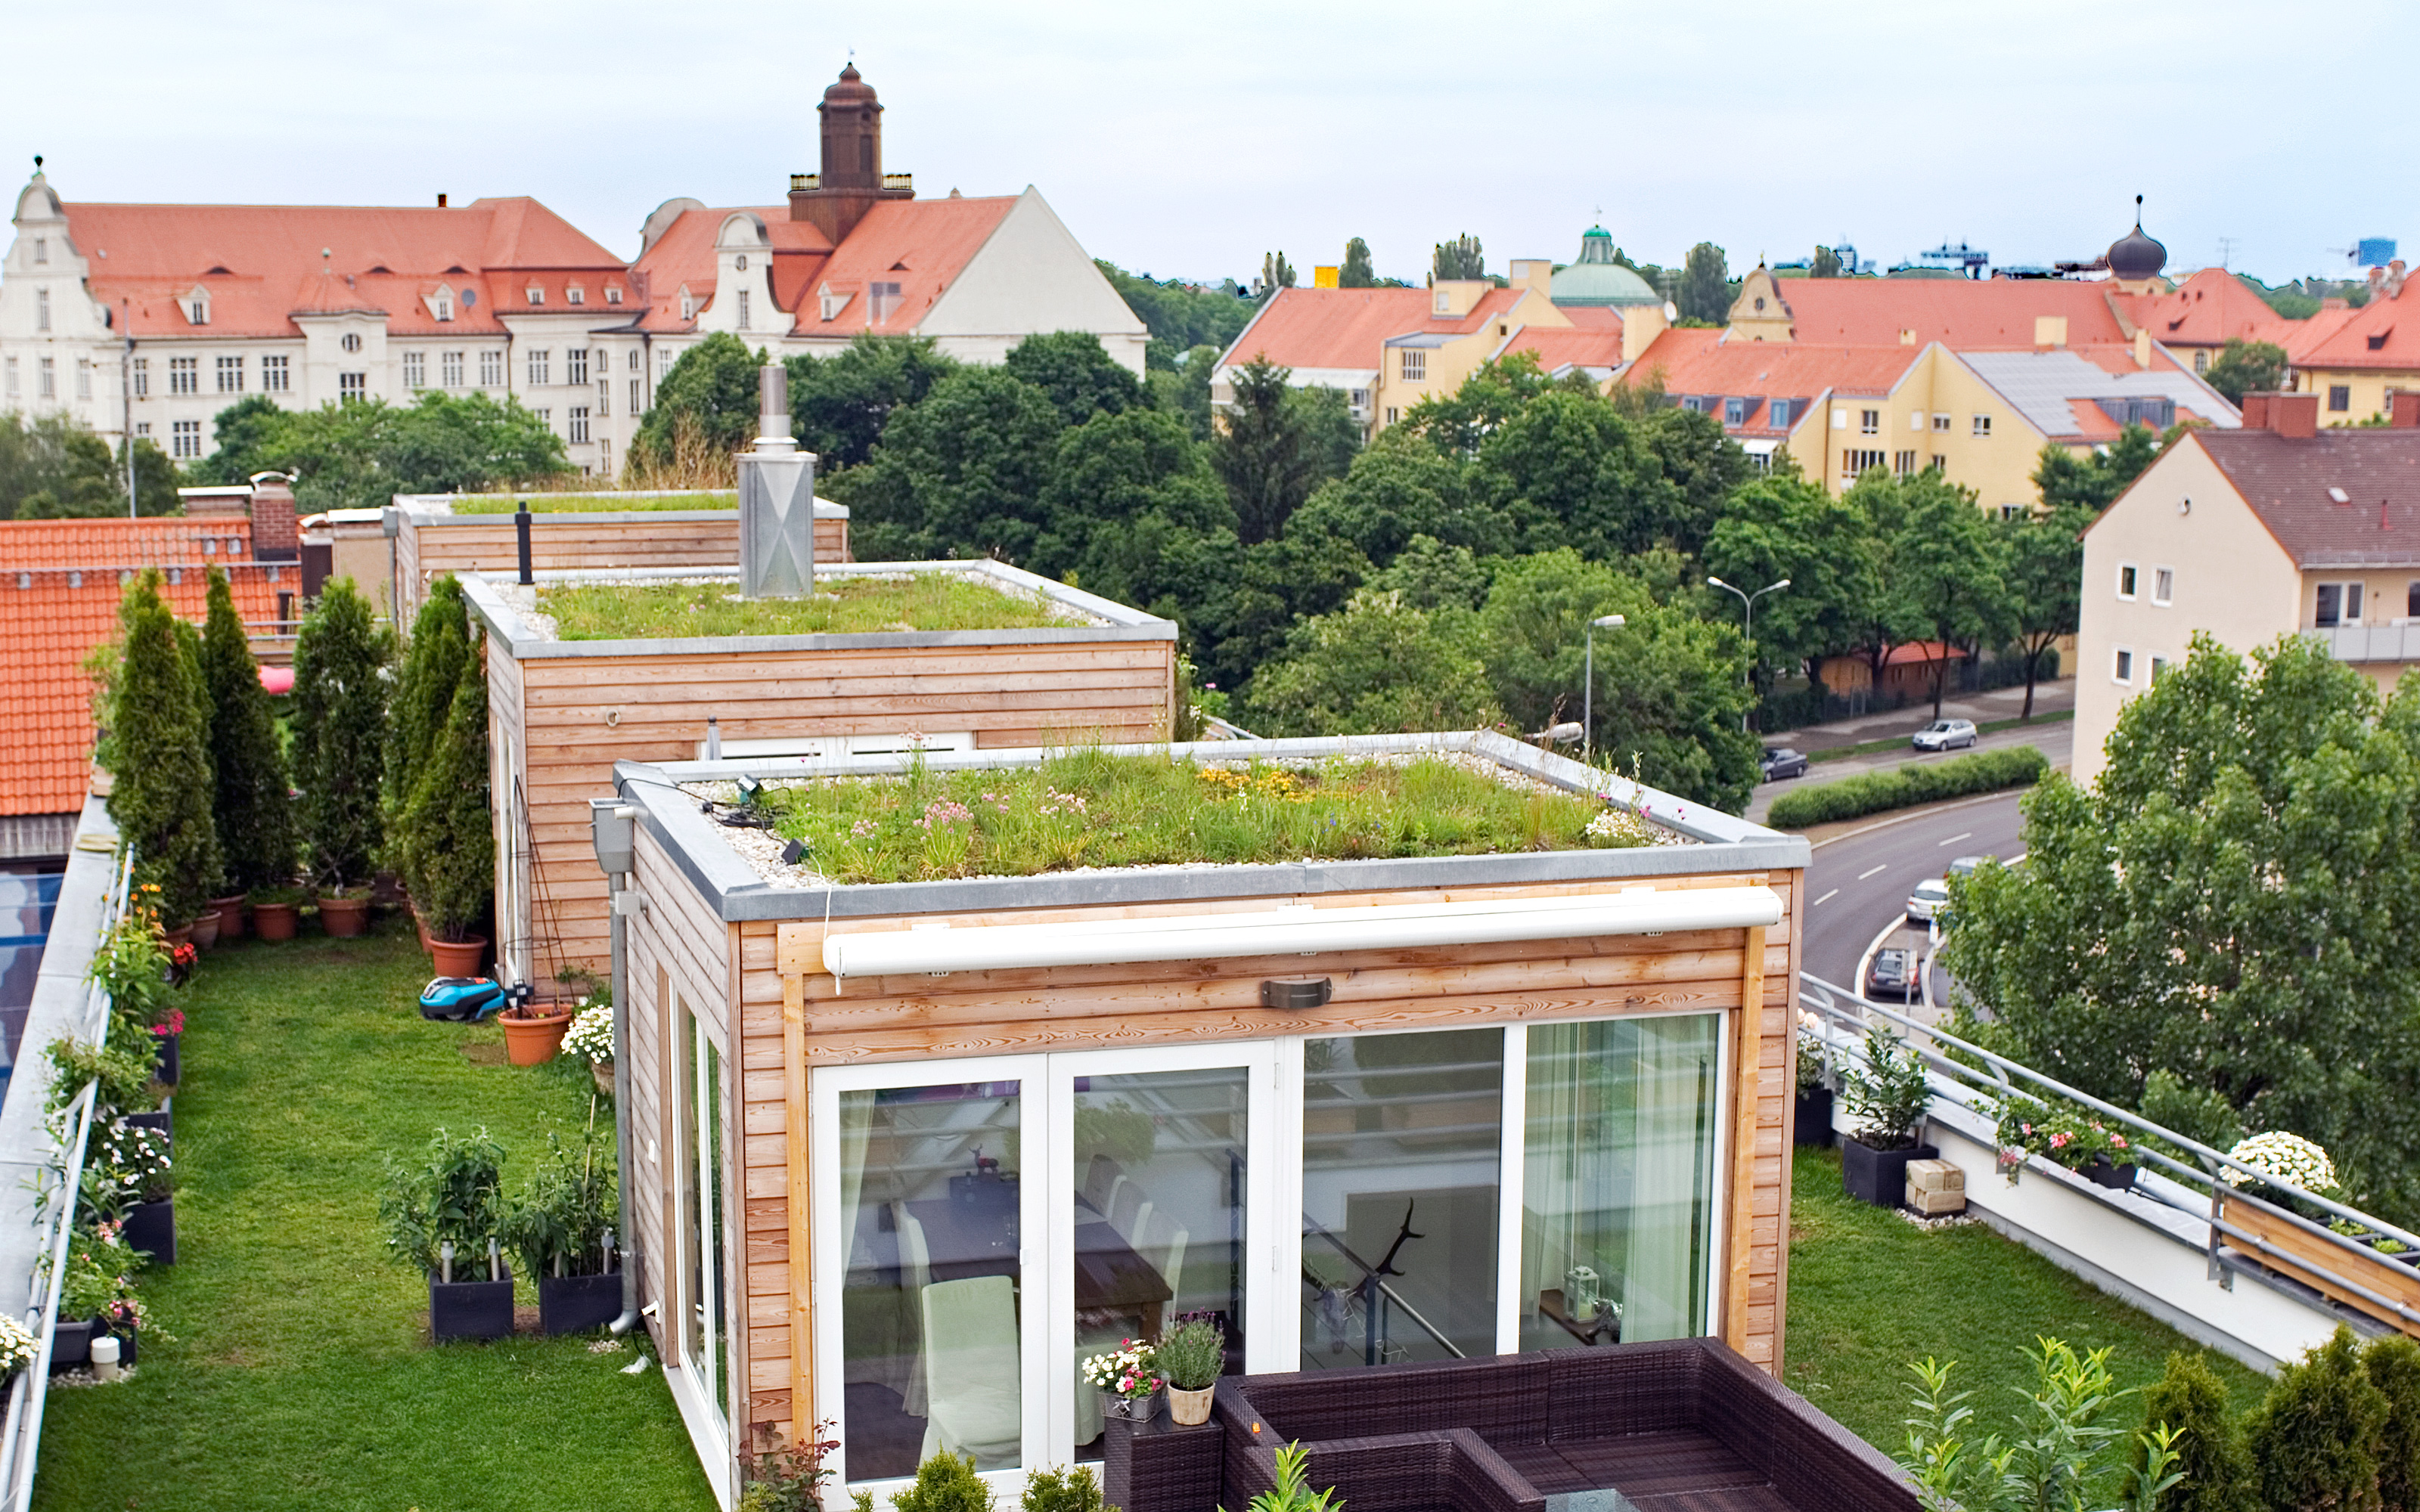 Dachgarten mit Rasen und würfelartigen Häuschen